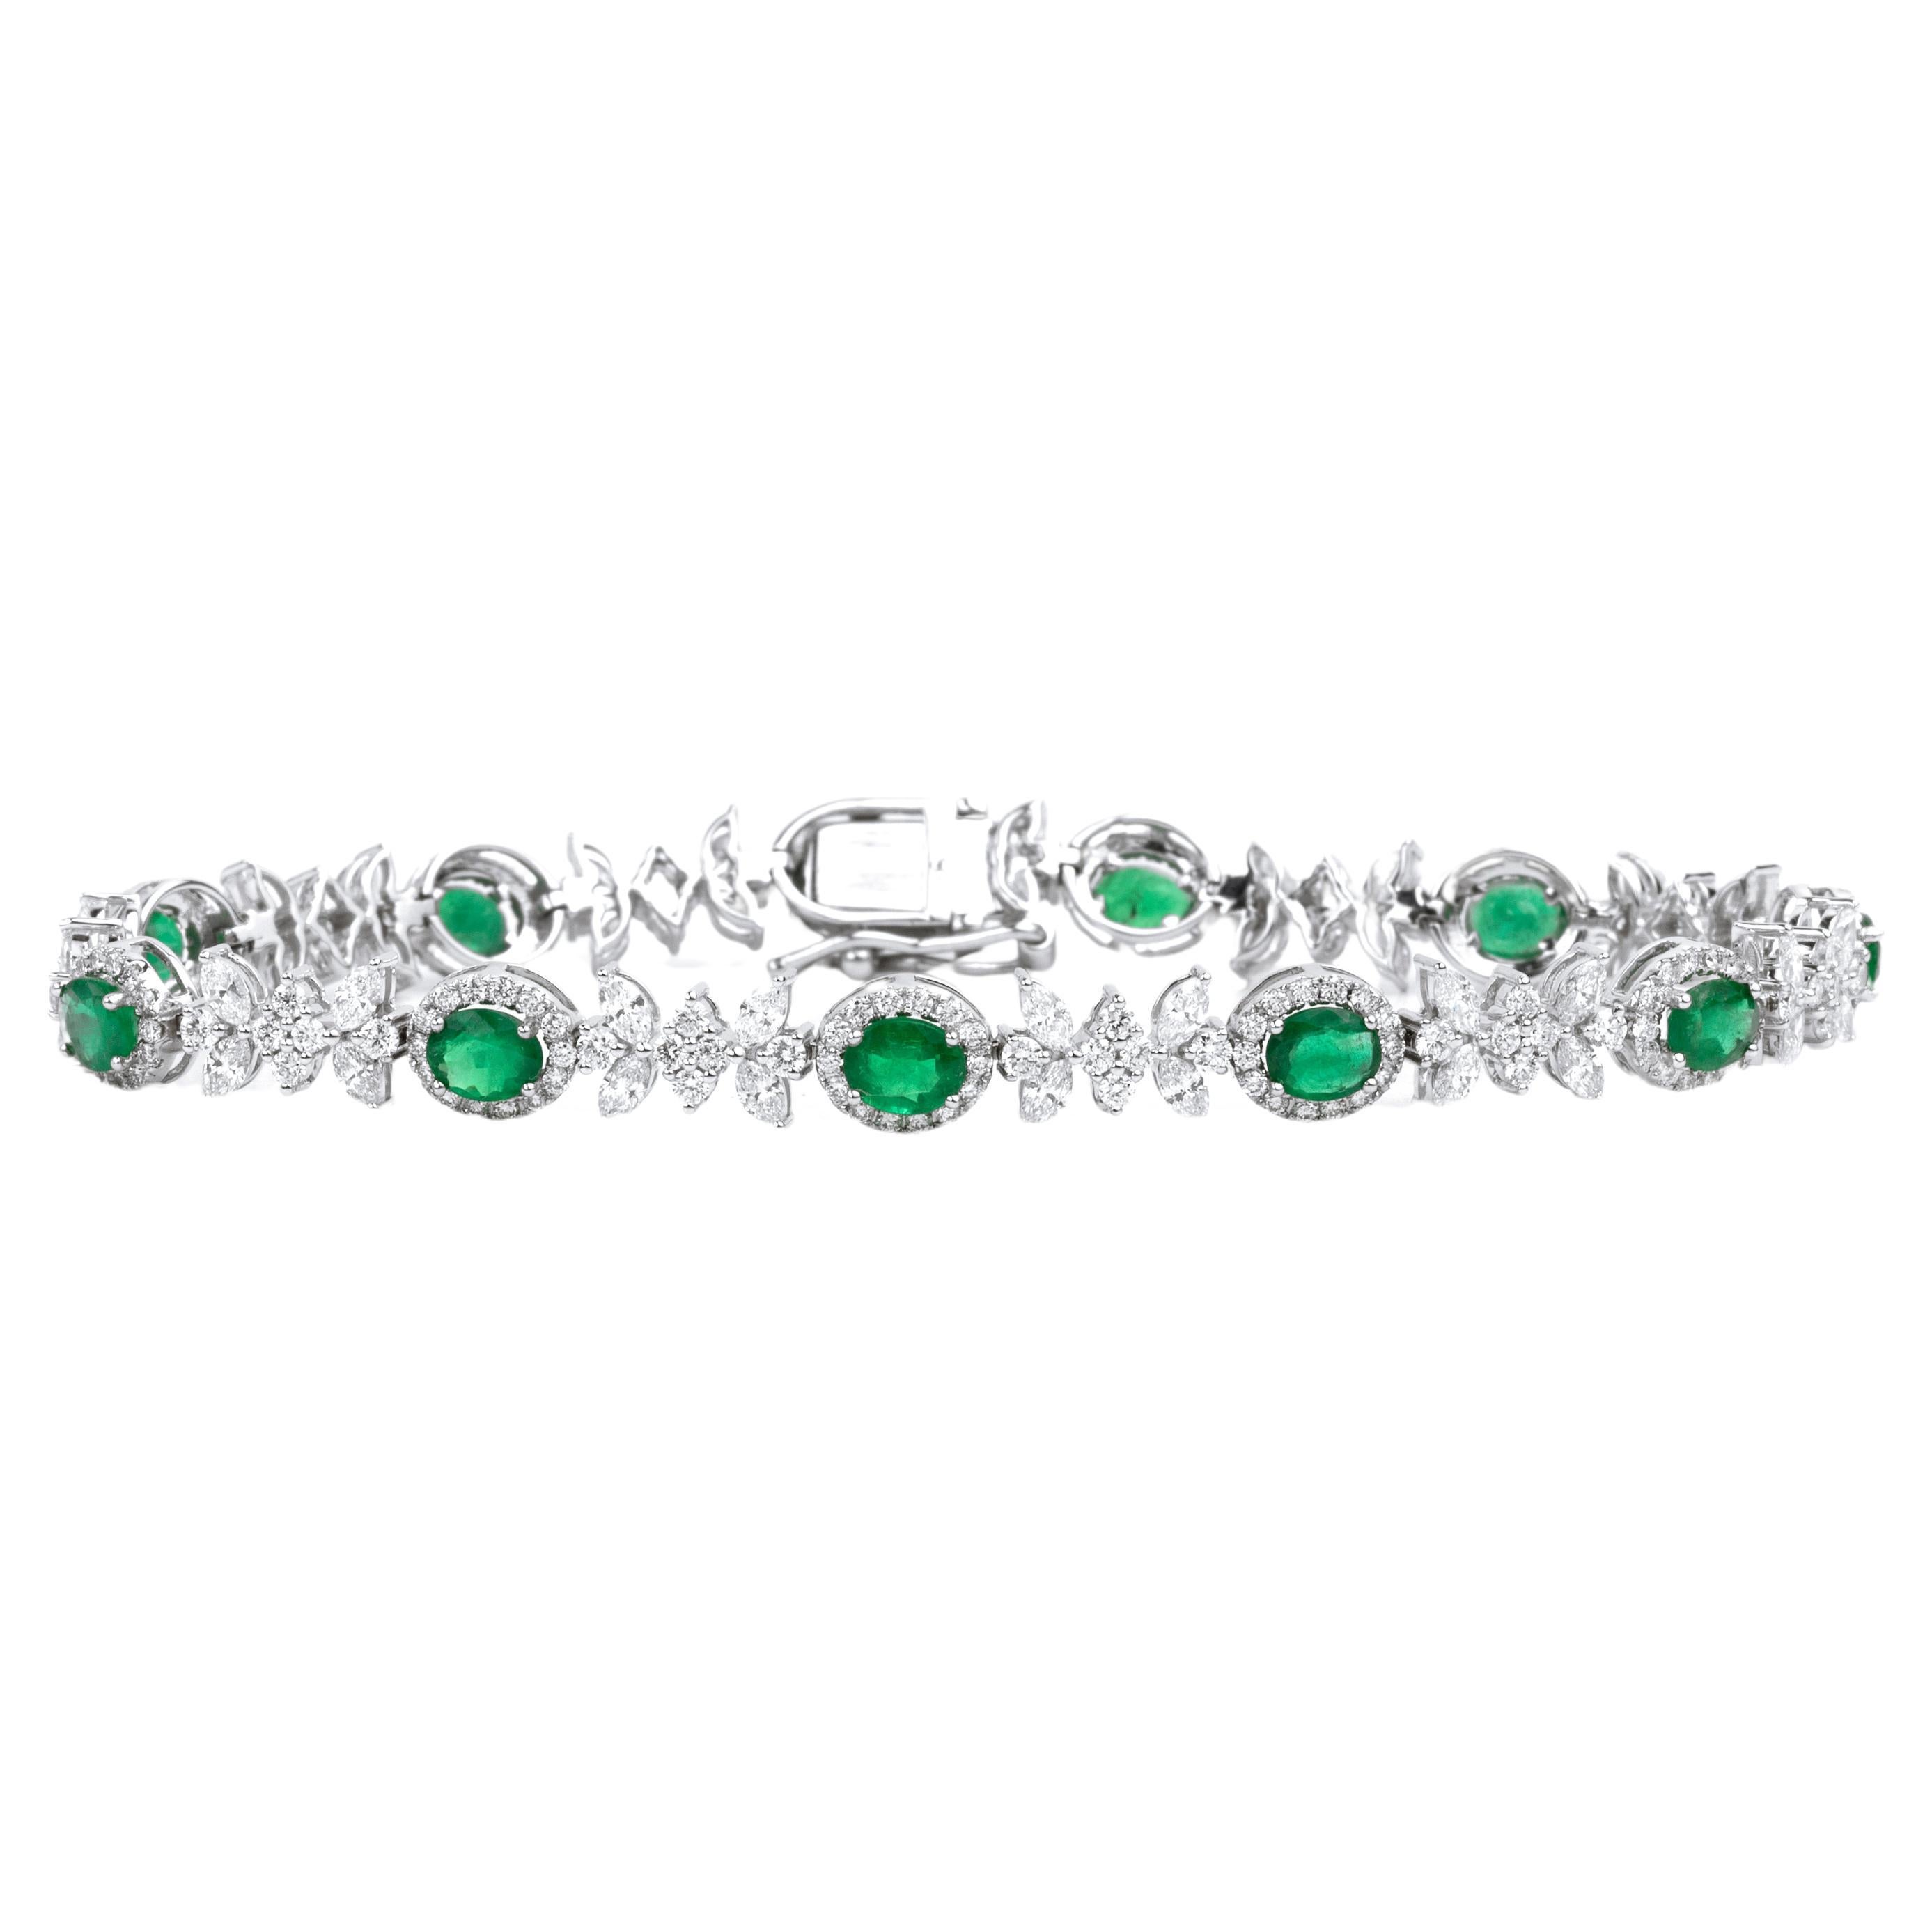 Außergewöhnliche 4,5 Ct Oval Cut Natural Emerald Armband mit Diamant 18k Weißgold